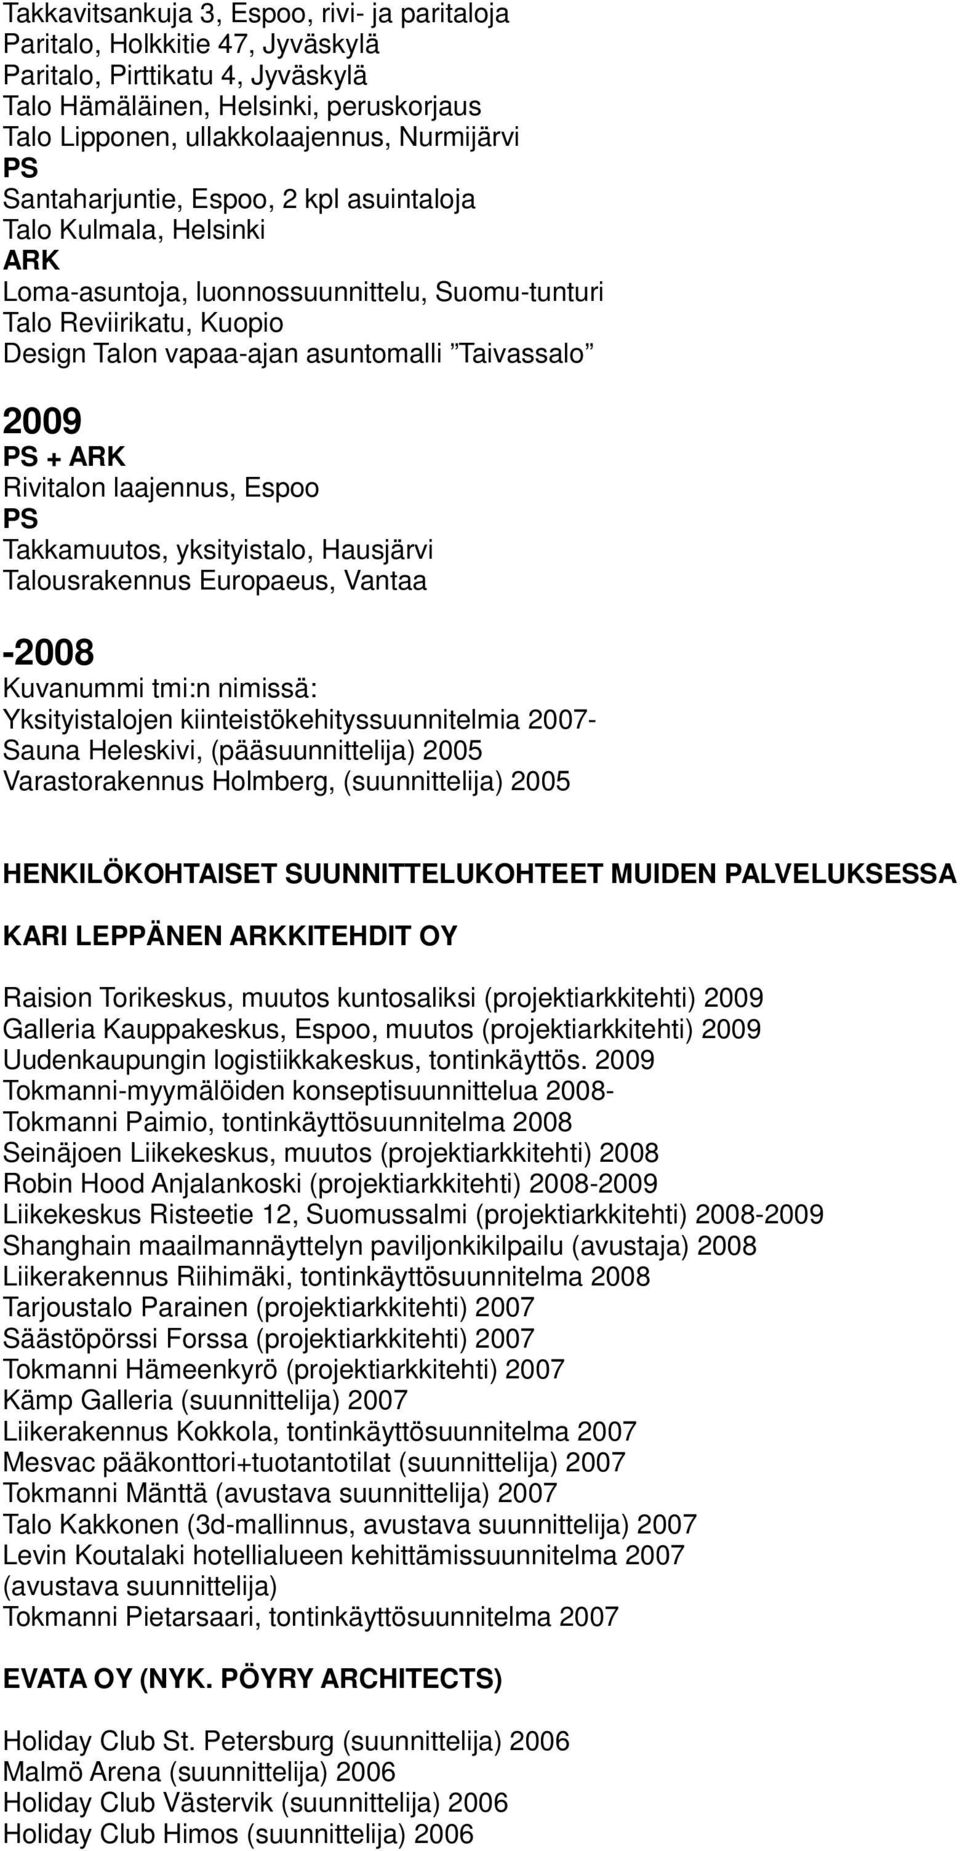 Rivitalon laajennus, Espoo Takkamuutos, yksityistalo, Hausjärvi Talousrakennus Europaeus, Vantaa -2008 Kuvanummi tmi:n nimissä: Yksityistalojen kiinteistökehityssuunnitelmia 2007- Sauna Heleskivi,